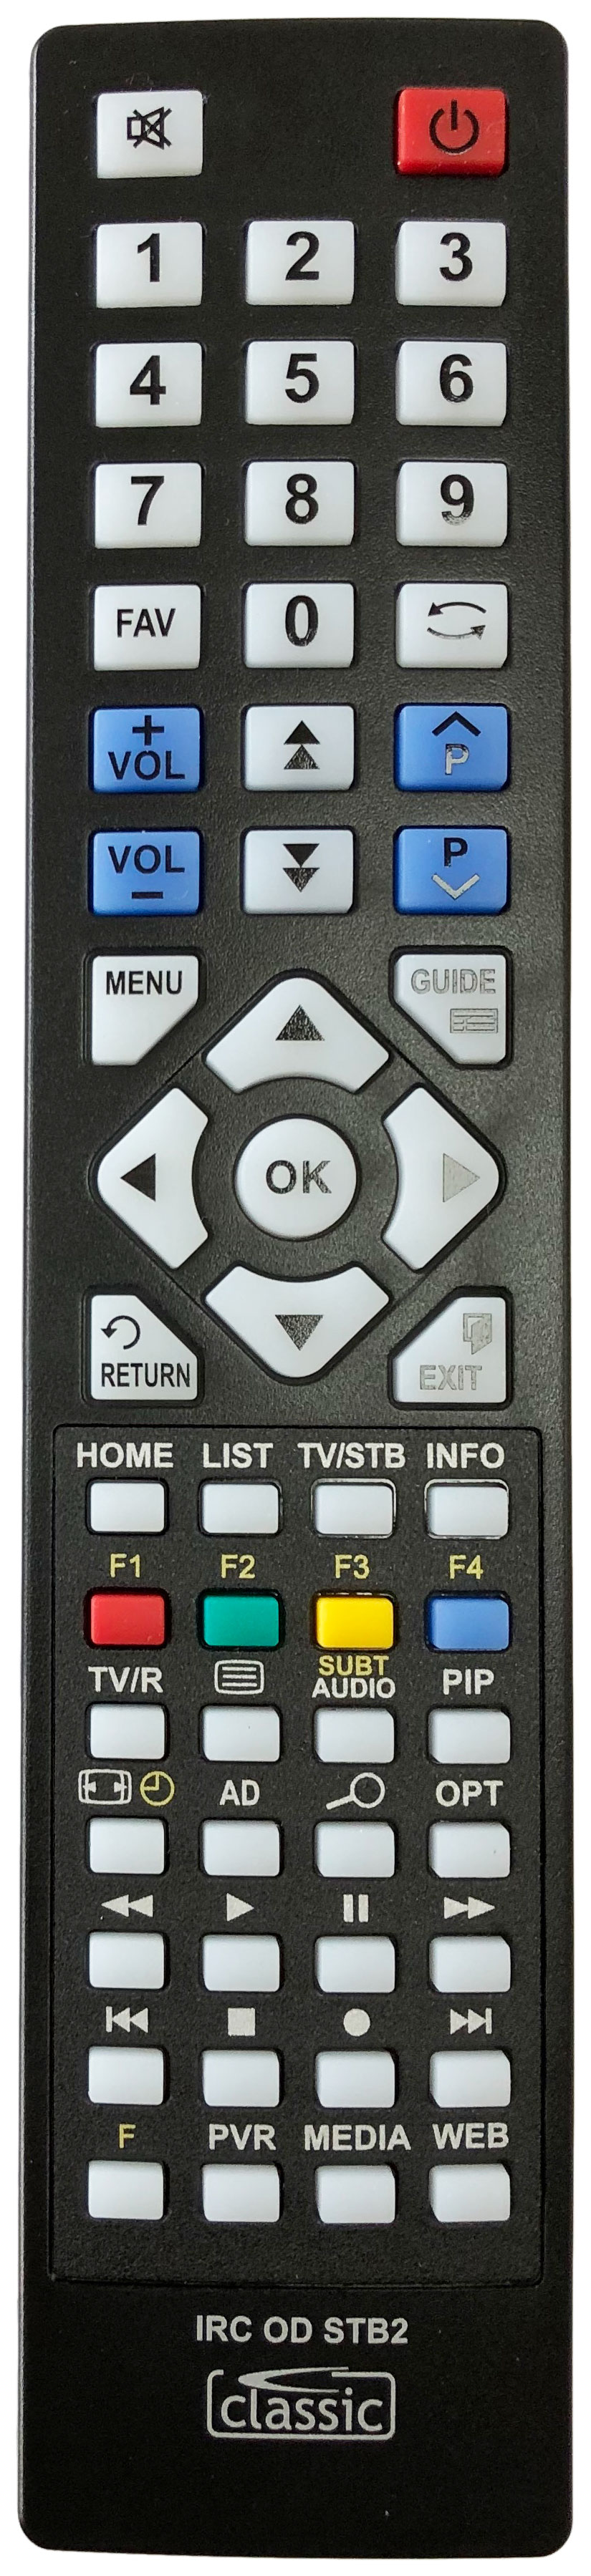 FINLUX T7675-1TB Remote Control Alternative